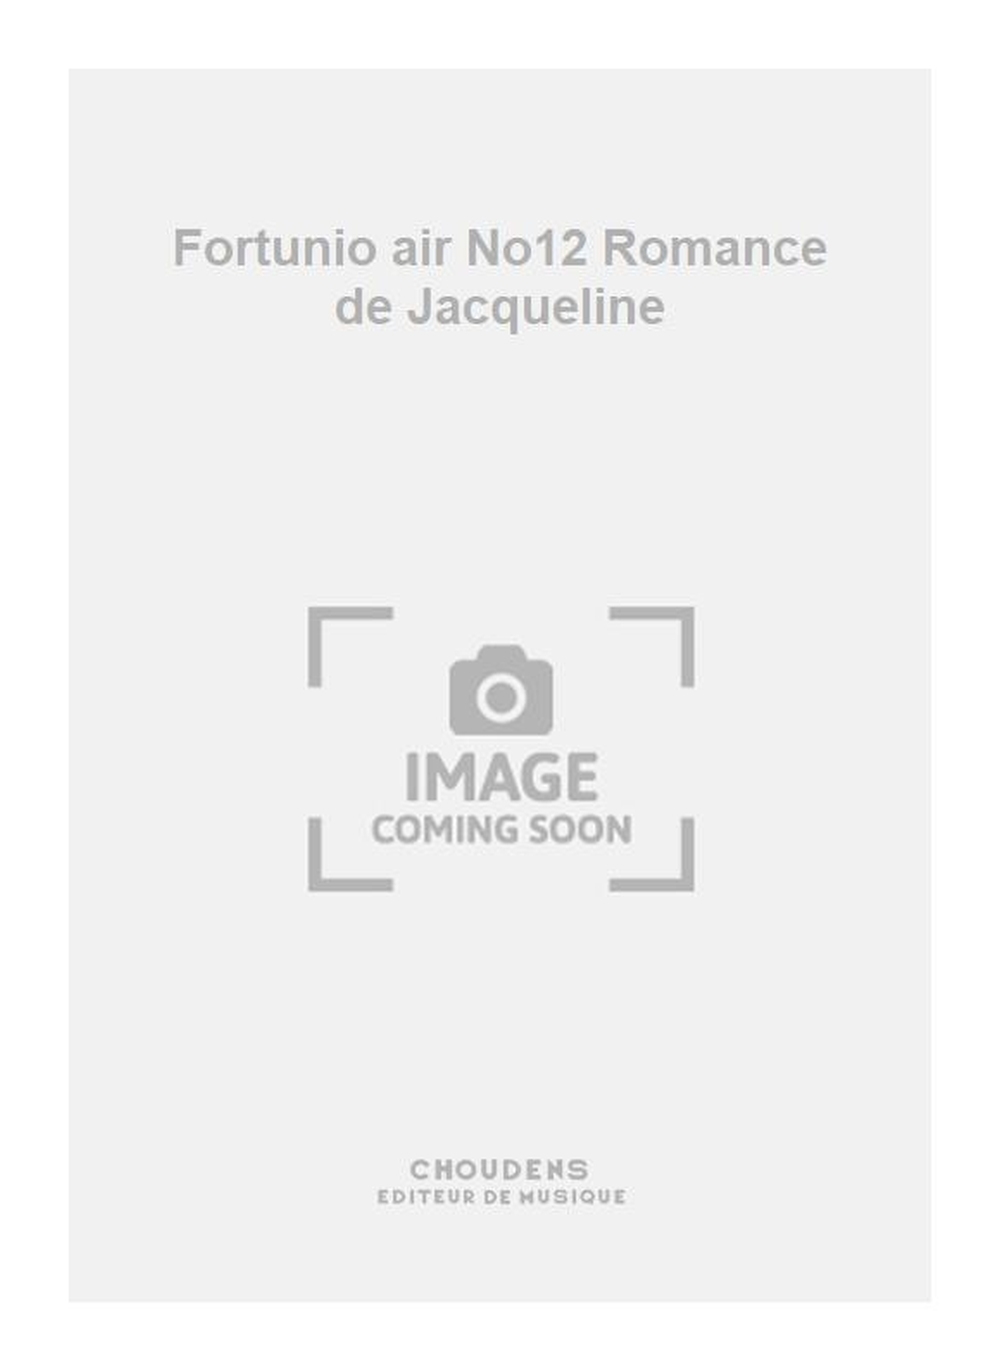 Messager: Fortunio air No12 Romance de Jacqueline